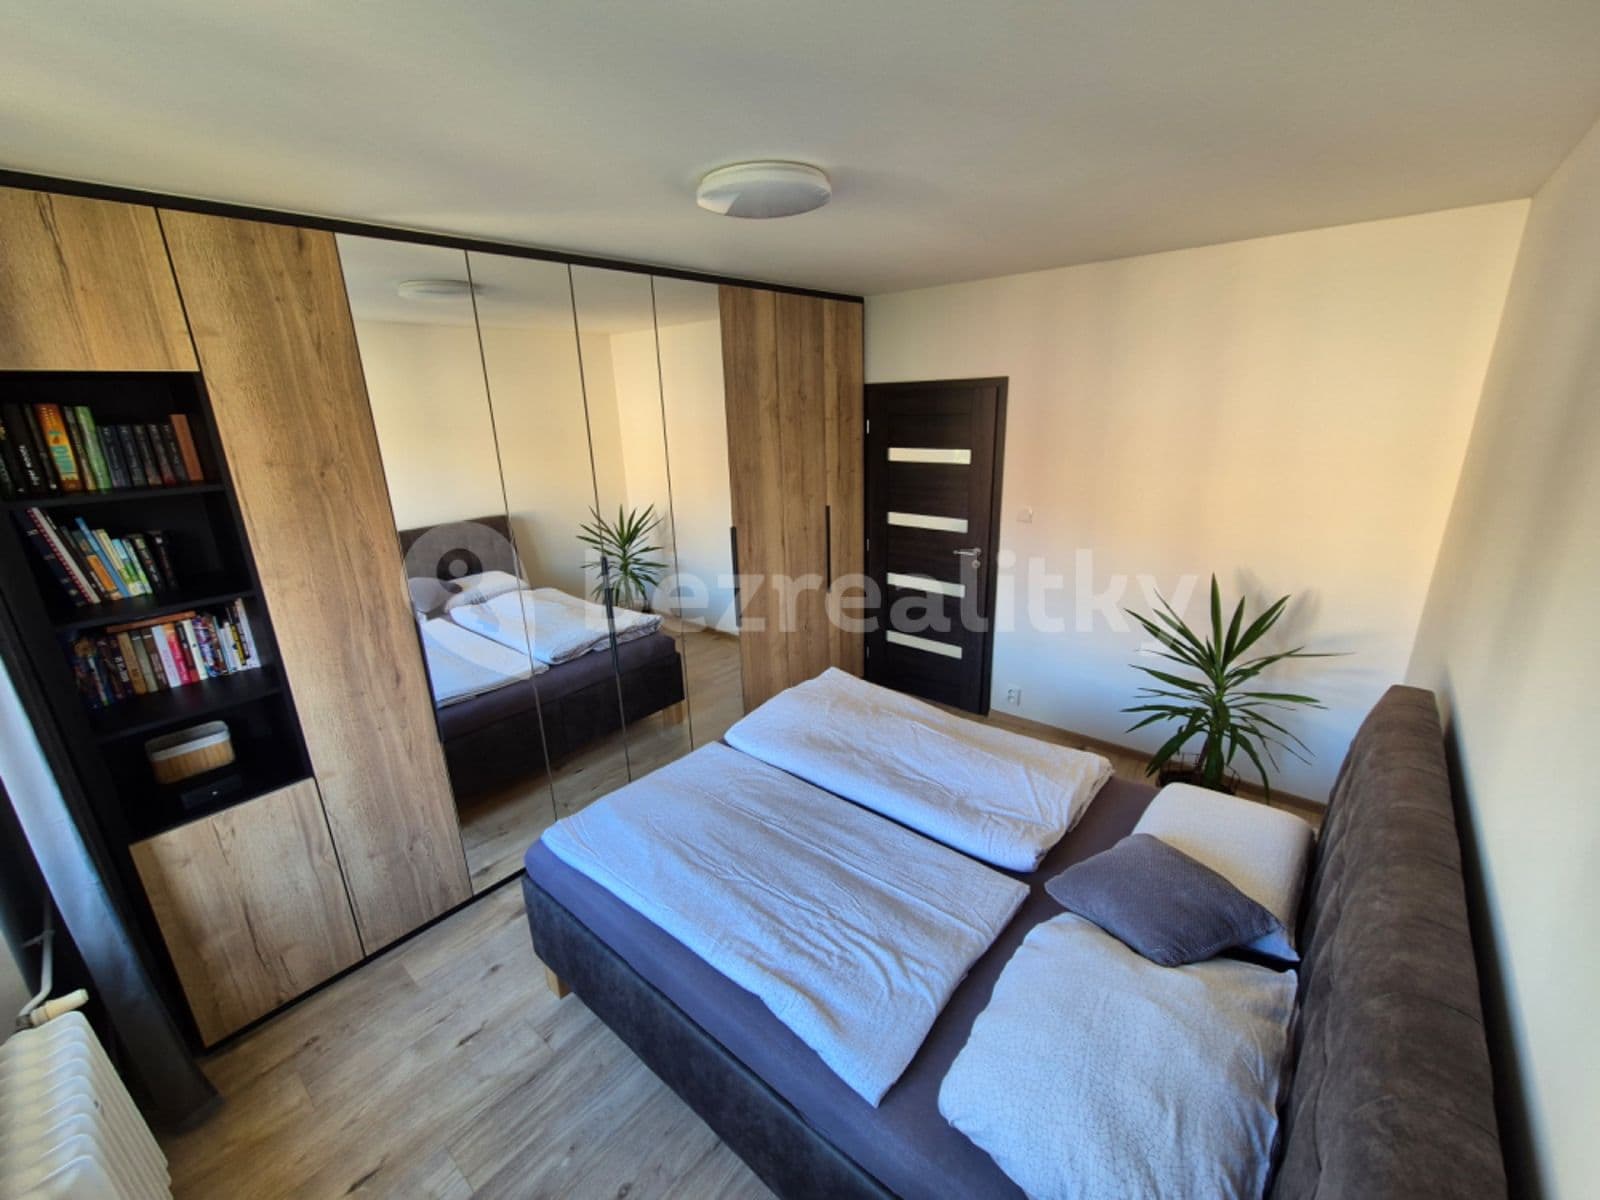 2 bedroom with open-plan kitchen flat for sale, 62 m², Kamenická, Děčín, Ústecký Region